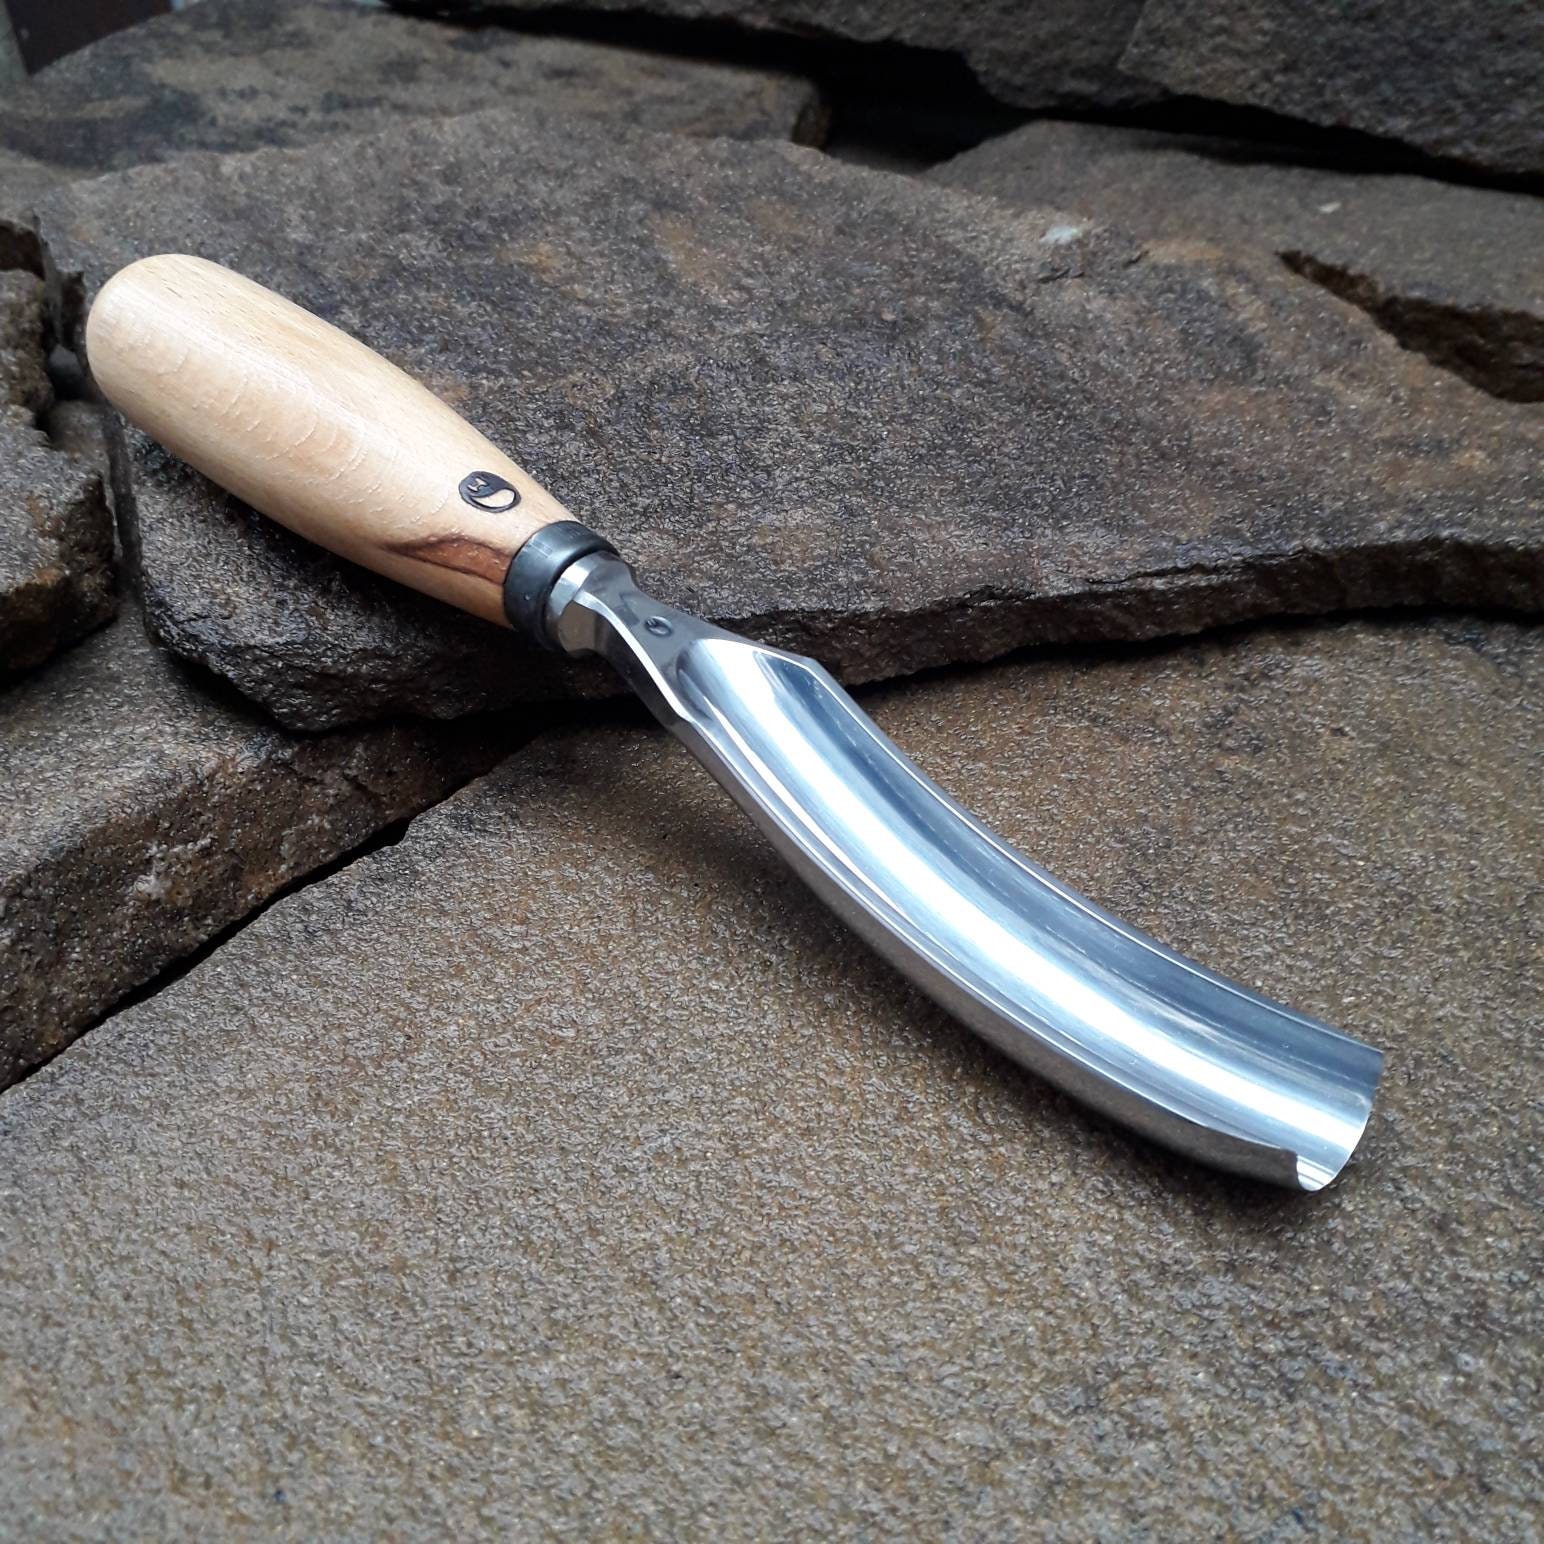 Tohosha Wood Carving Chisel 6 Piece Set V U Gouge, Skewed Flat Bent Back Chisel